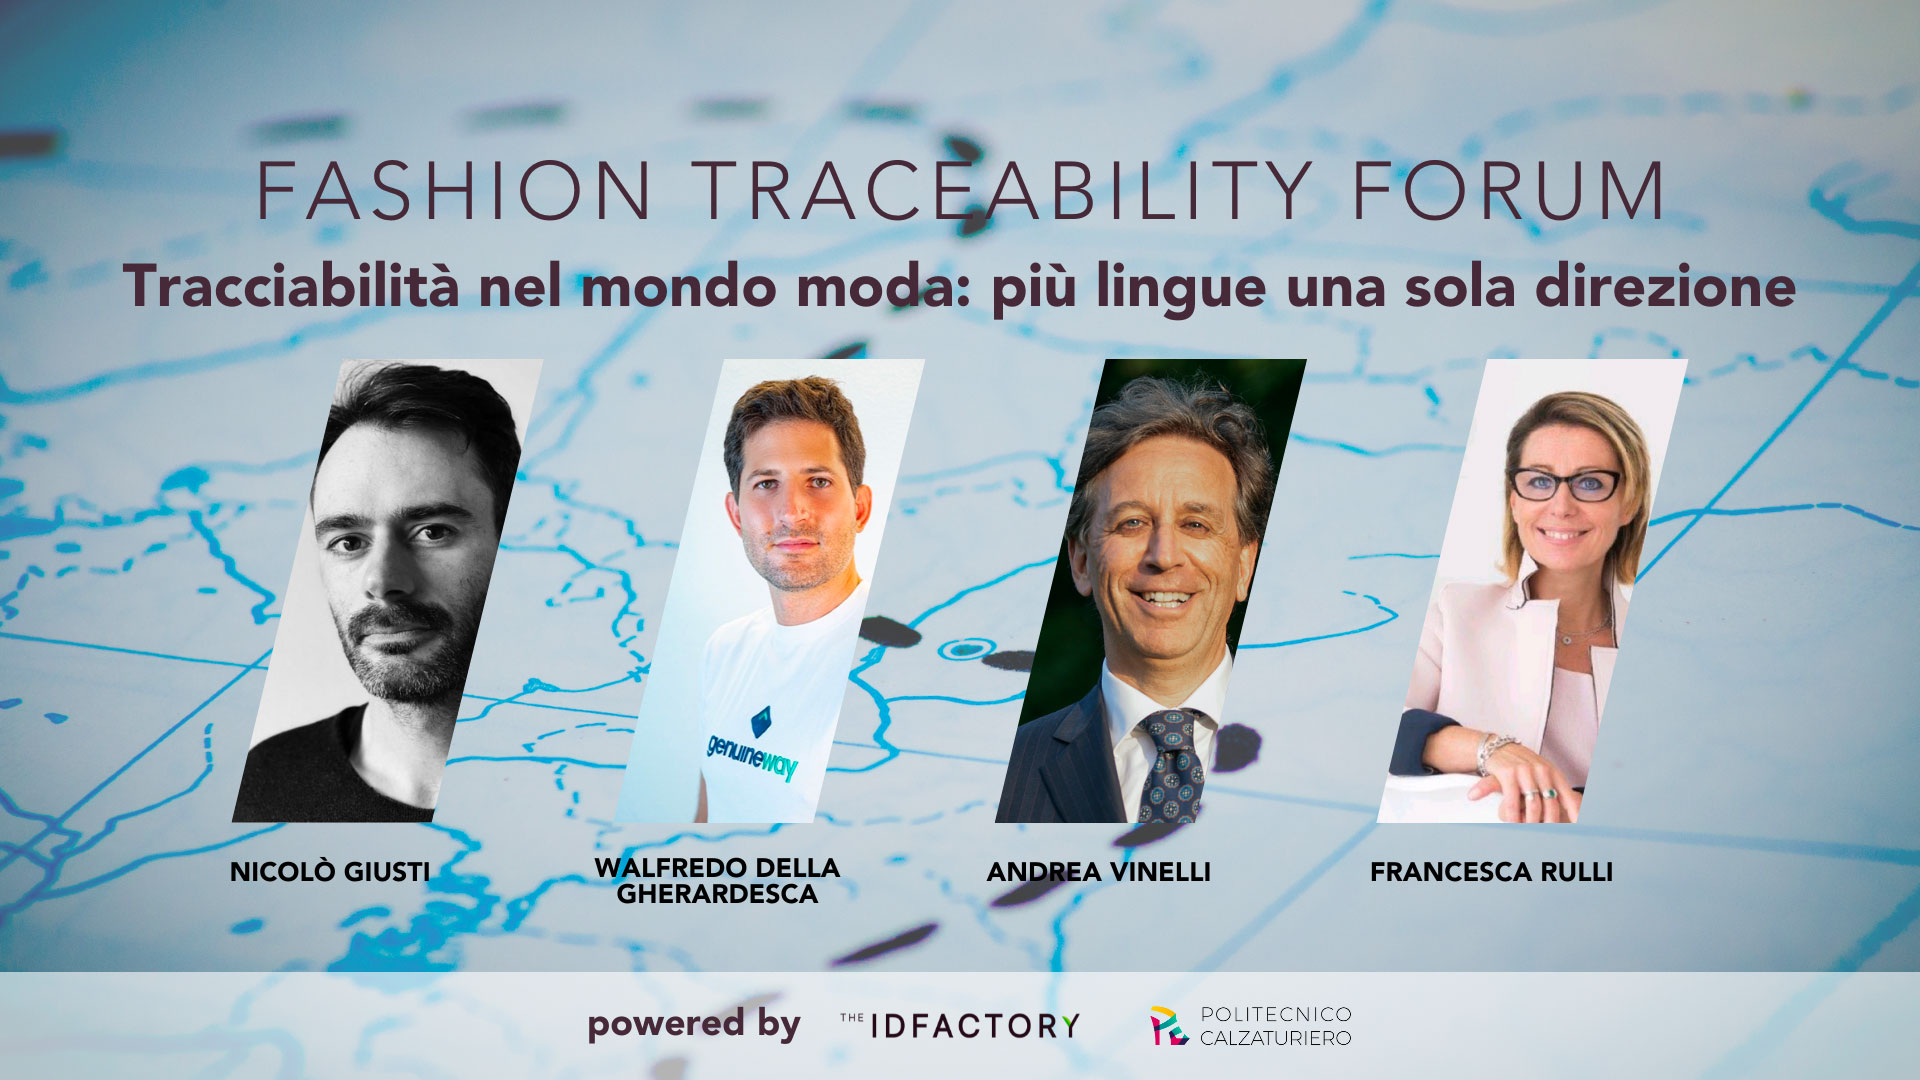 Fashion Traceability Forum